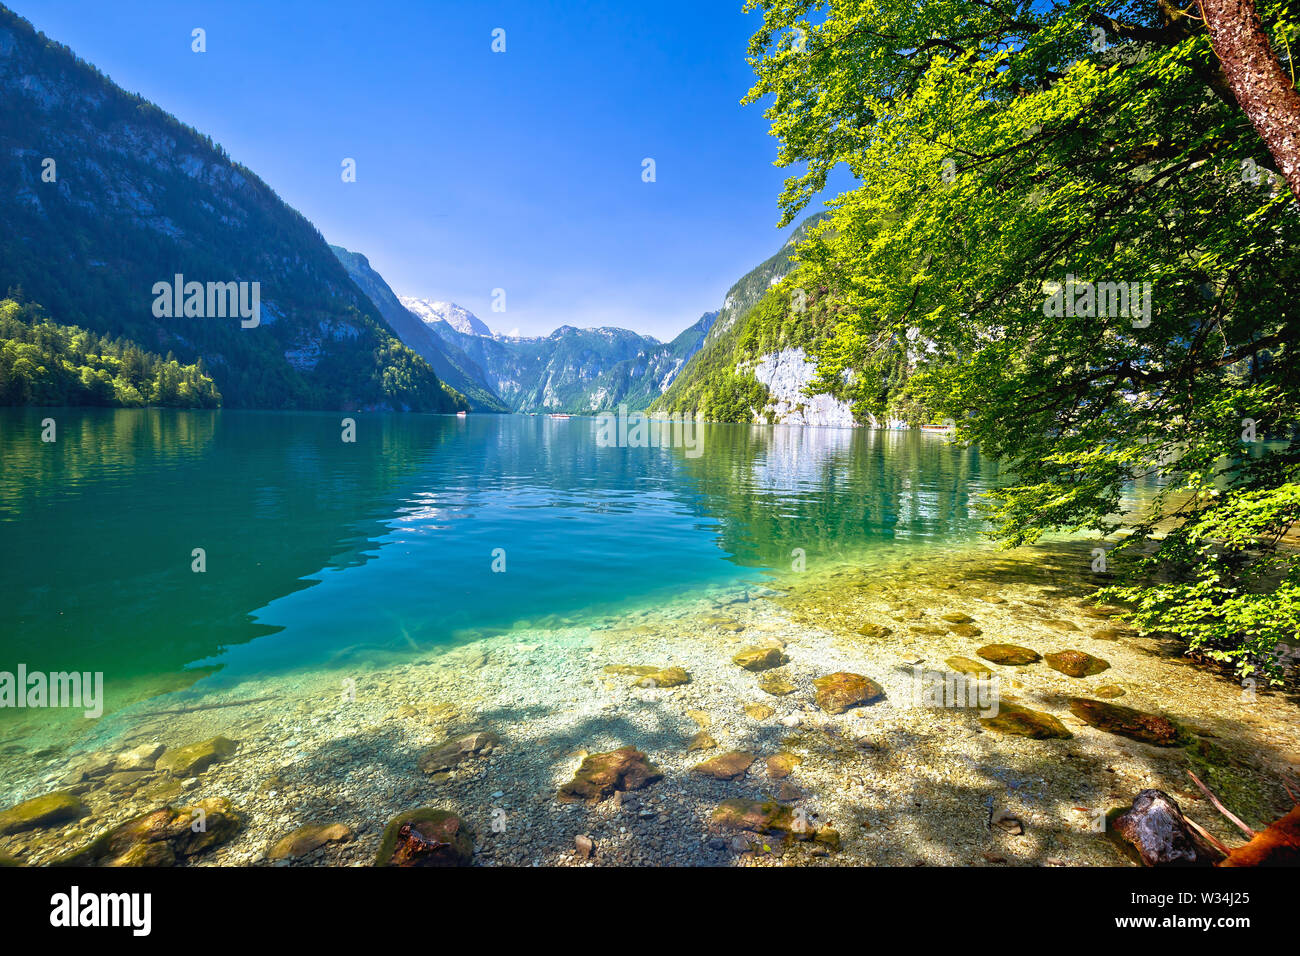 Konigssee lago alpino idílica costa acantilados vista, Berchtesgadener Land de Baviera, Alemania Foto de stock